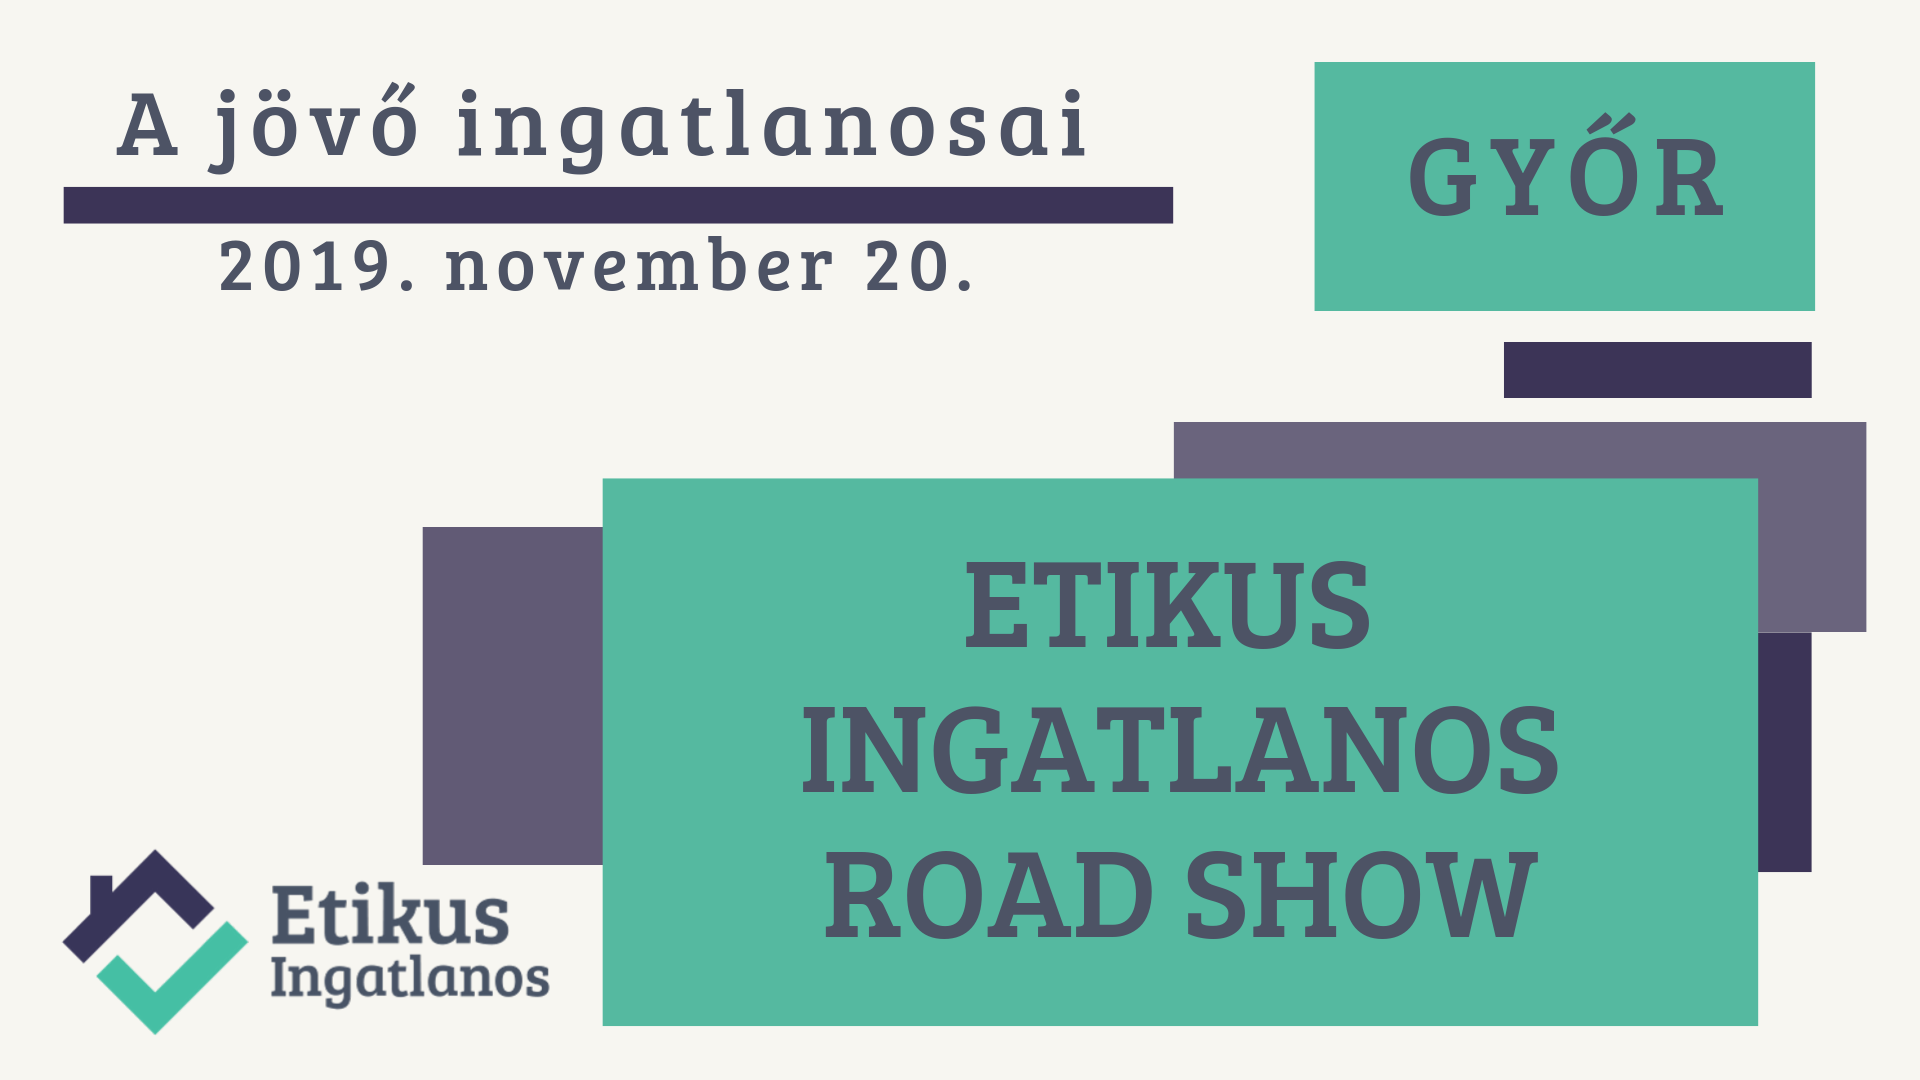 Egy képen a közelgő Etikus Ingatlanos RoadShow - 2019 november 20. - Győrc adatai láthatóak.